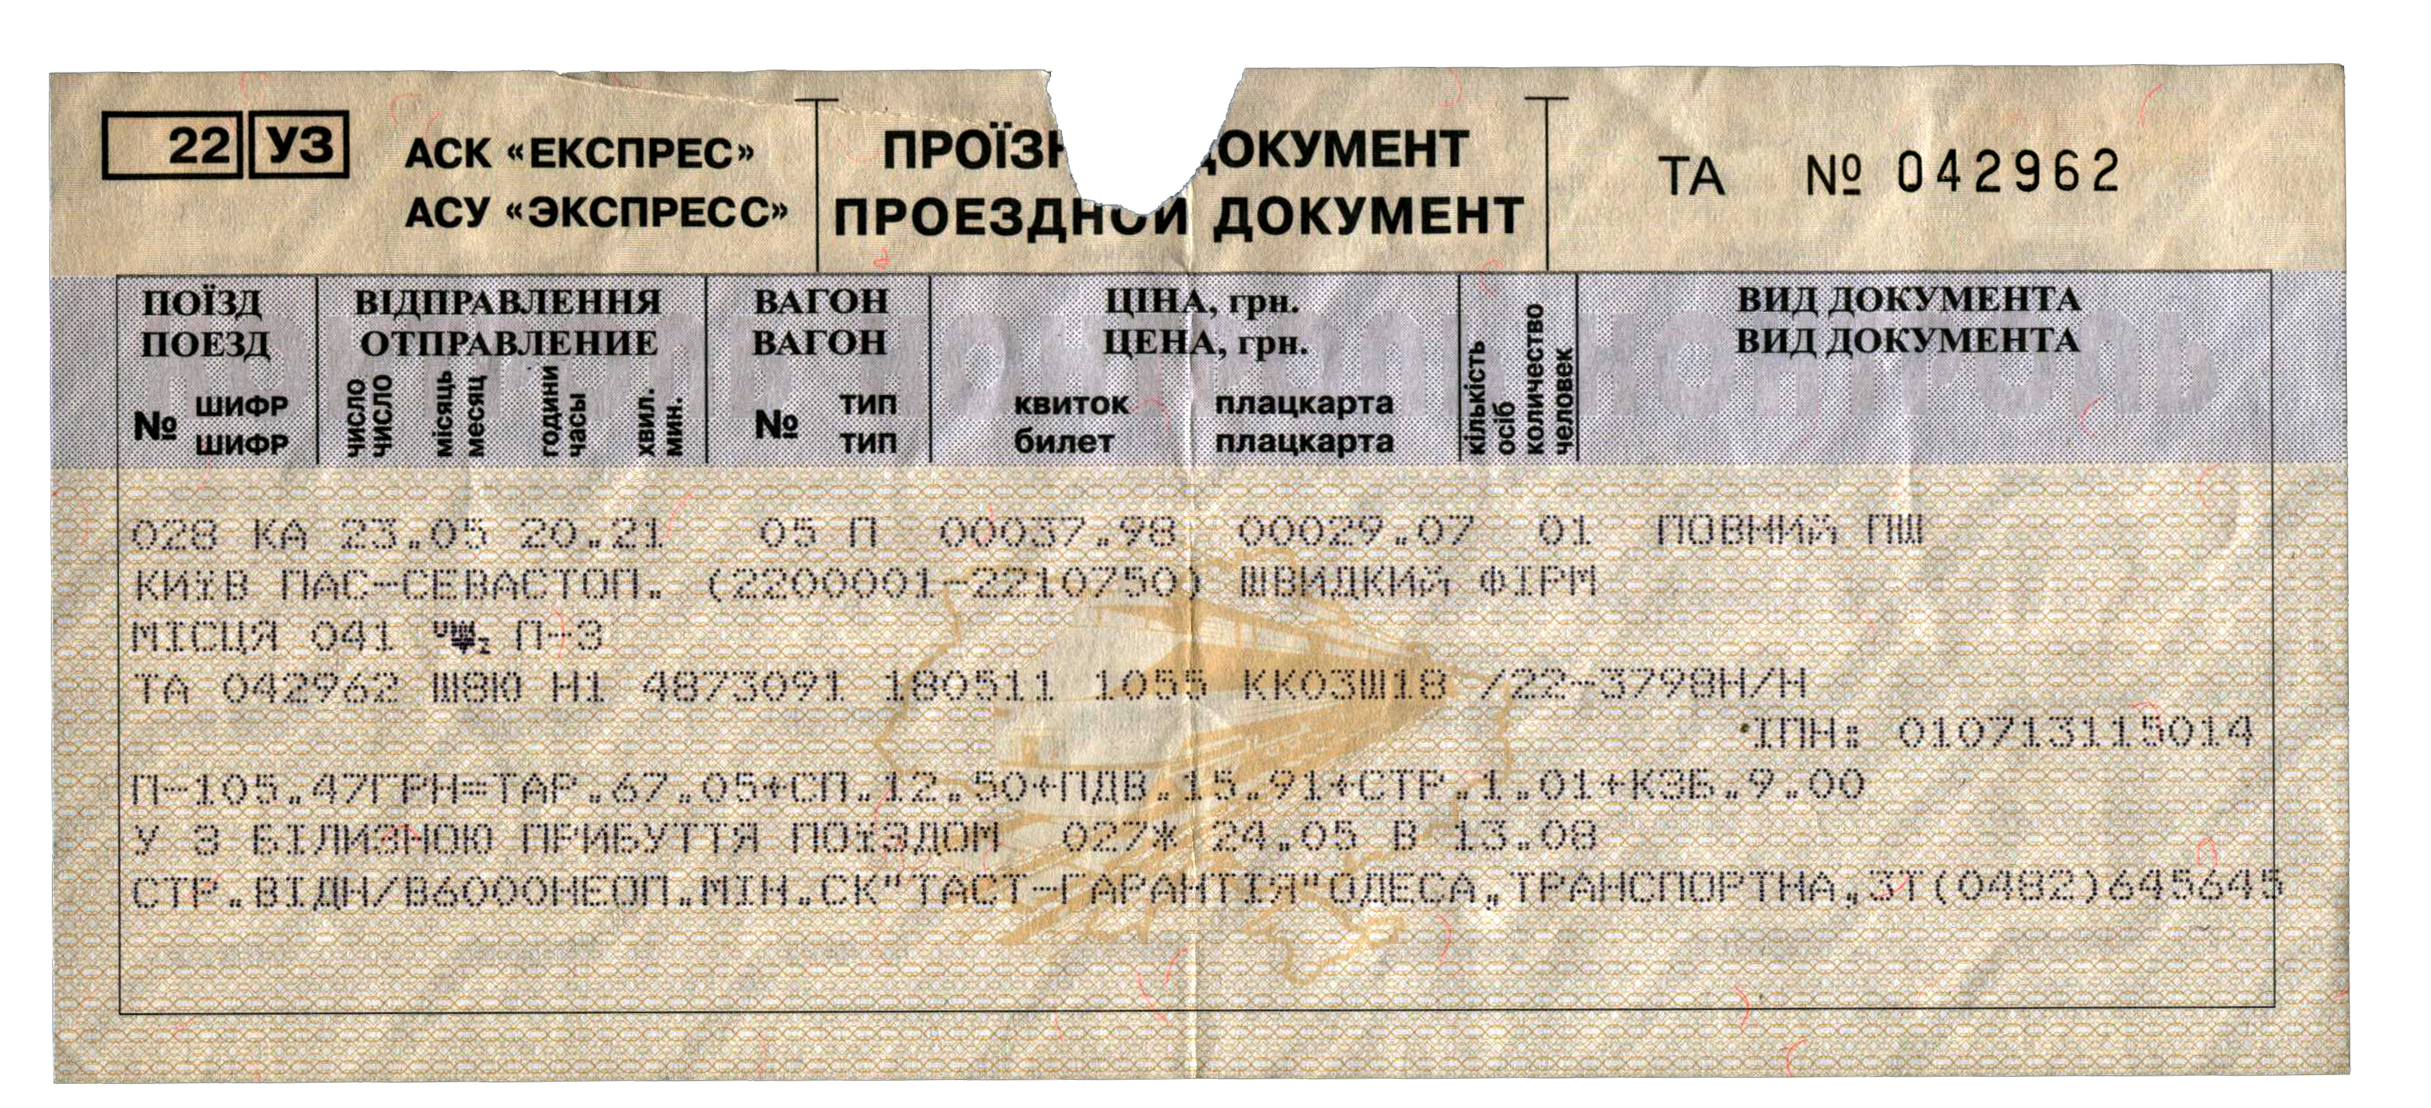 Купить билеты на скорый поезд москва